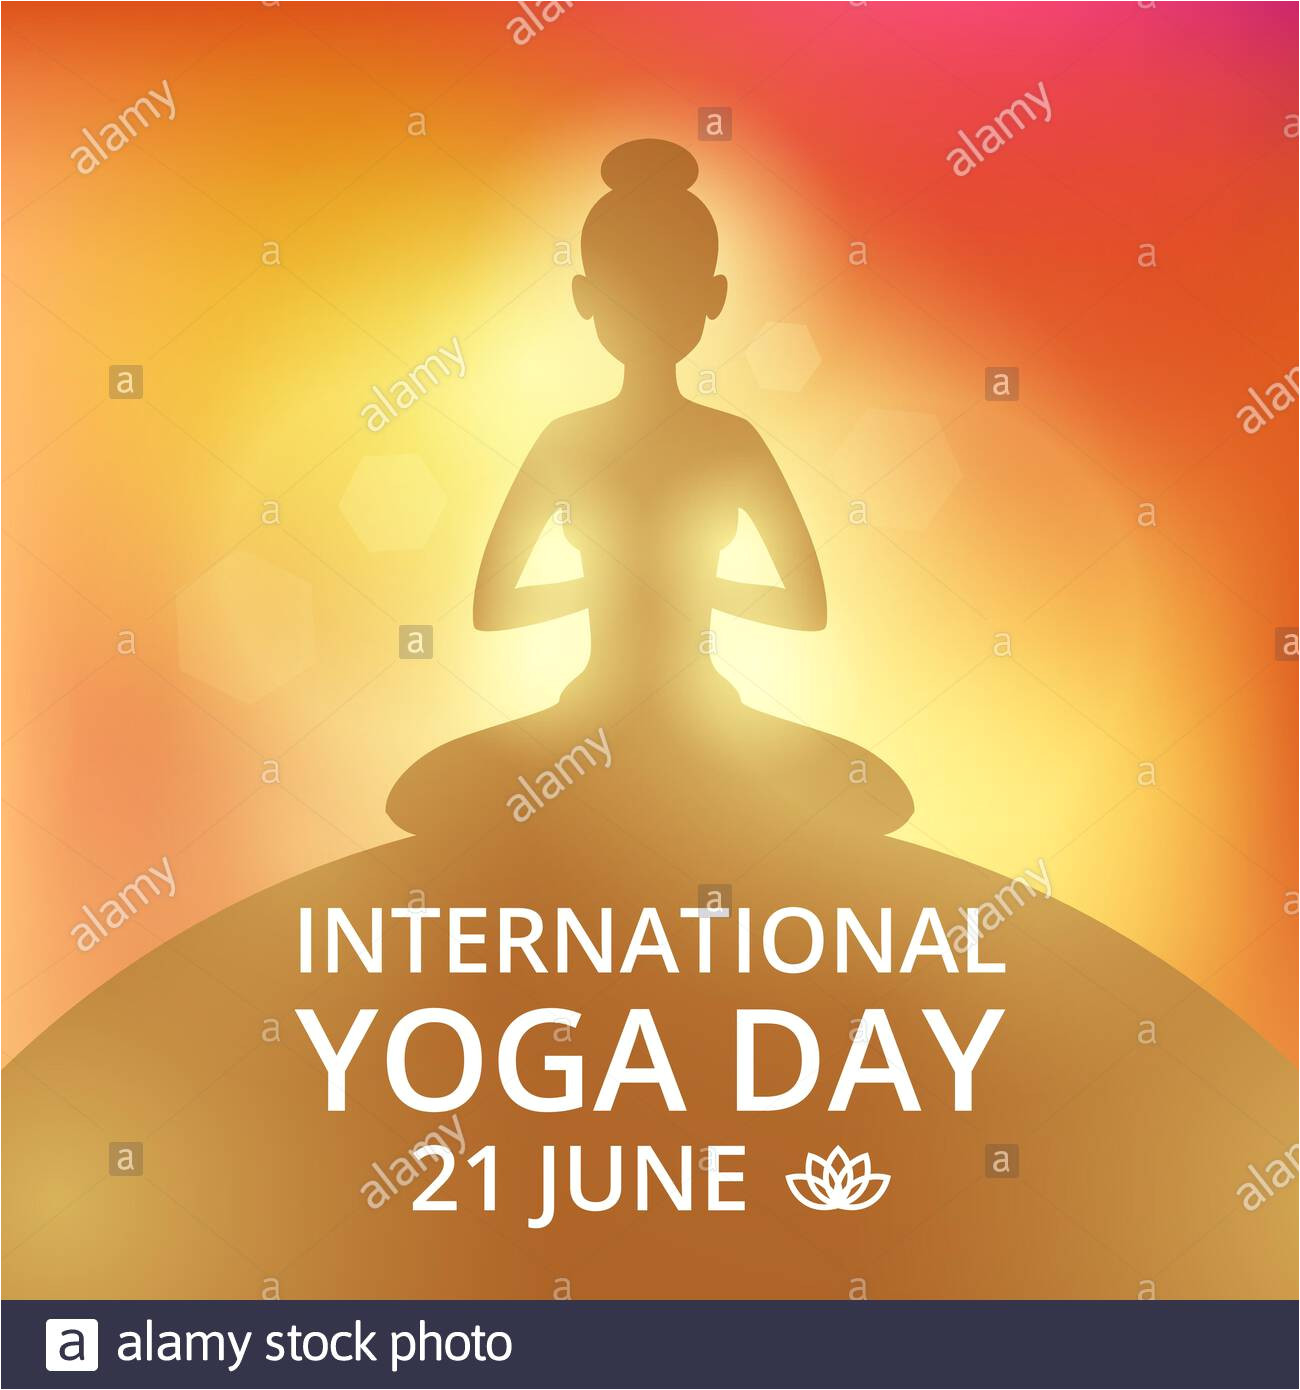 poster invitation on yoga day 21 june 2bnjb9n jpg